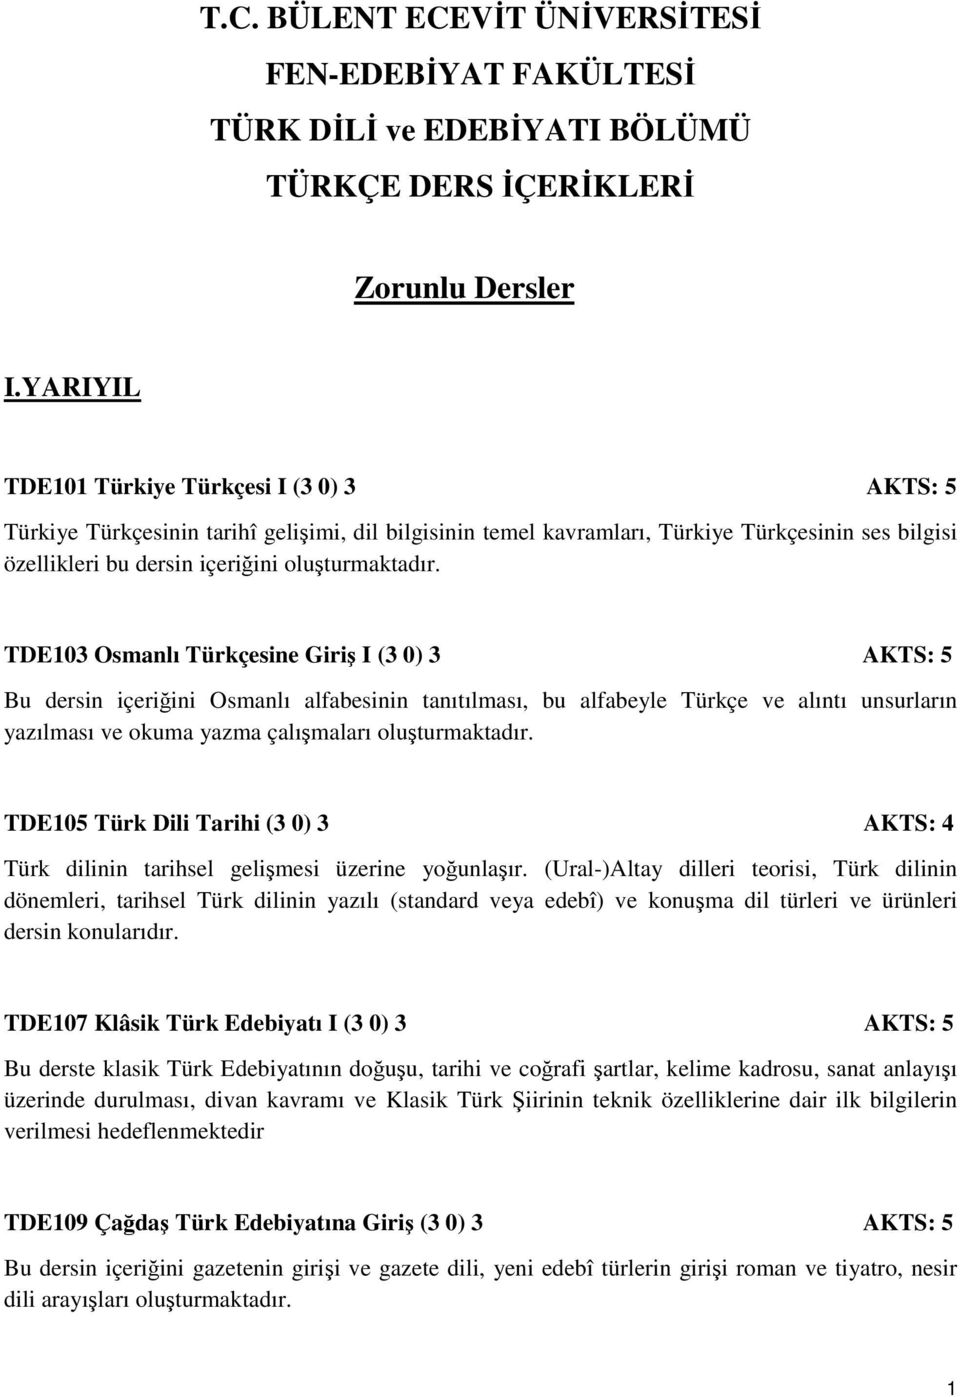 TDE103 Osmanlı Türkçesine Giriş I (3 0) 3 AKTS: 5 Bu dersin içeriğini Osmanlı alfabesinin tanıtılması, bu alfabeyle Türkçe ve alıntı unsurların yazılması ve okuma yazma çalışmaları oluşturmaktadır.